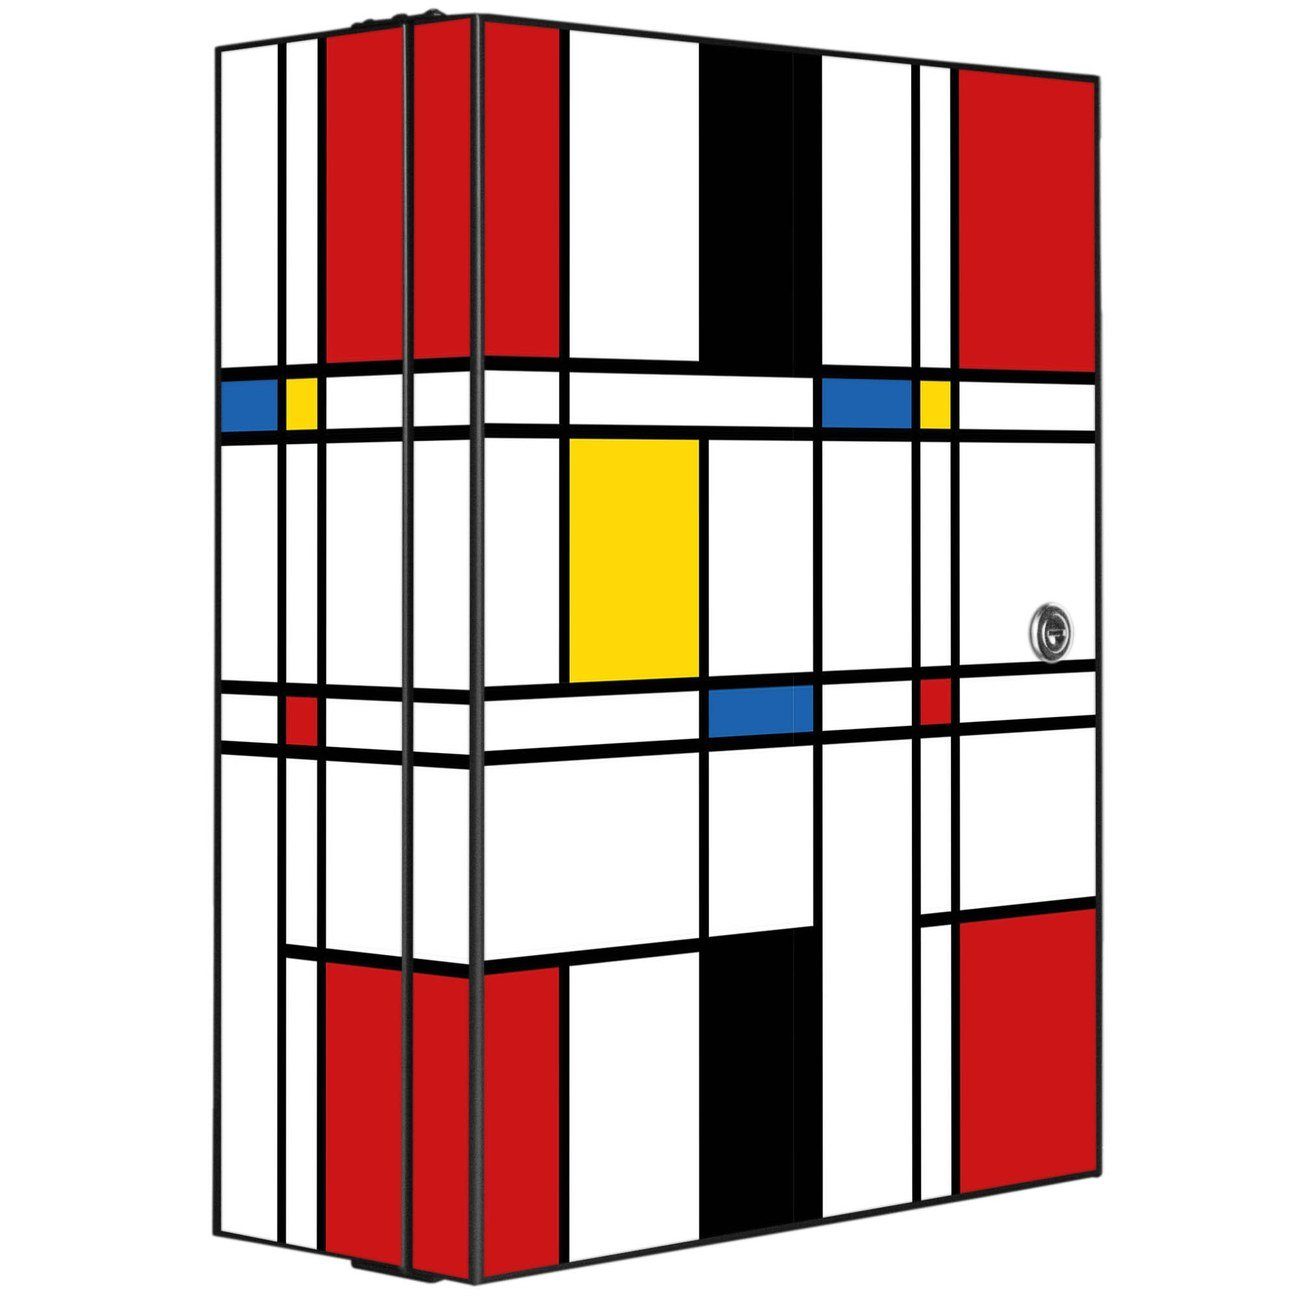 banjado Medizinschrank Stahl Rot Gelb Blau (abschließbar, 3 große und 2 kleine Fächer) 35 x 46 x 15cm schwarz